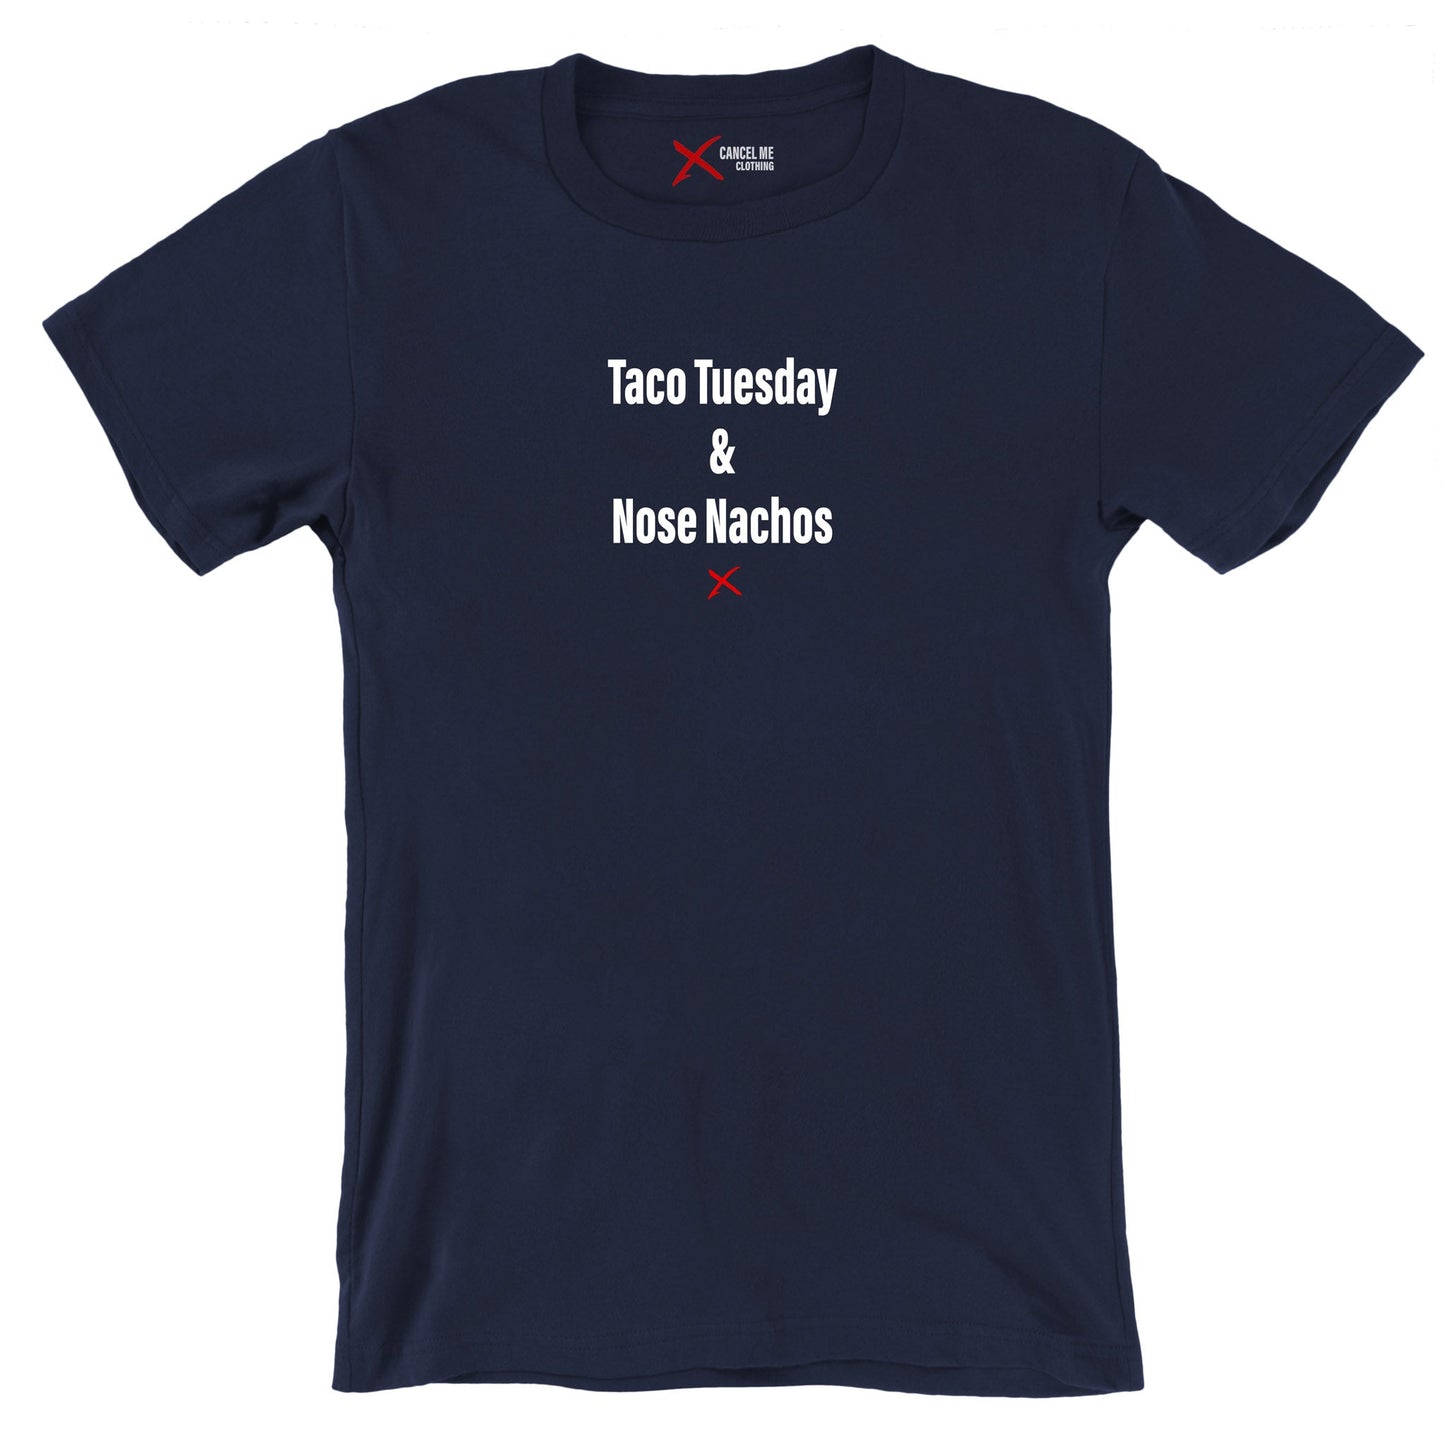 Taco Tuesday & Nose Nachos - Shirt